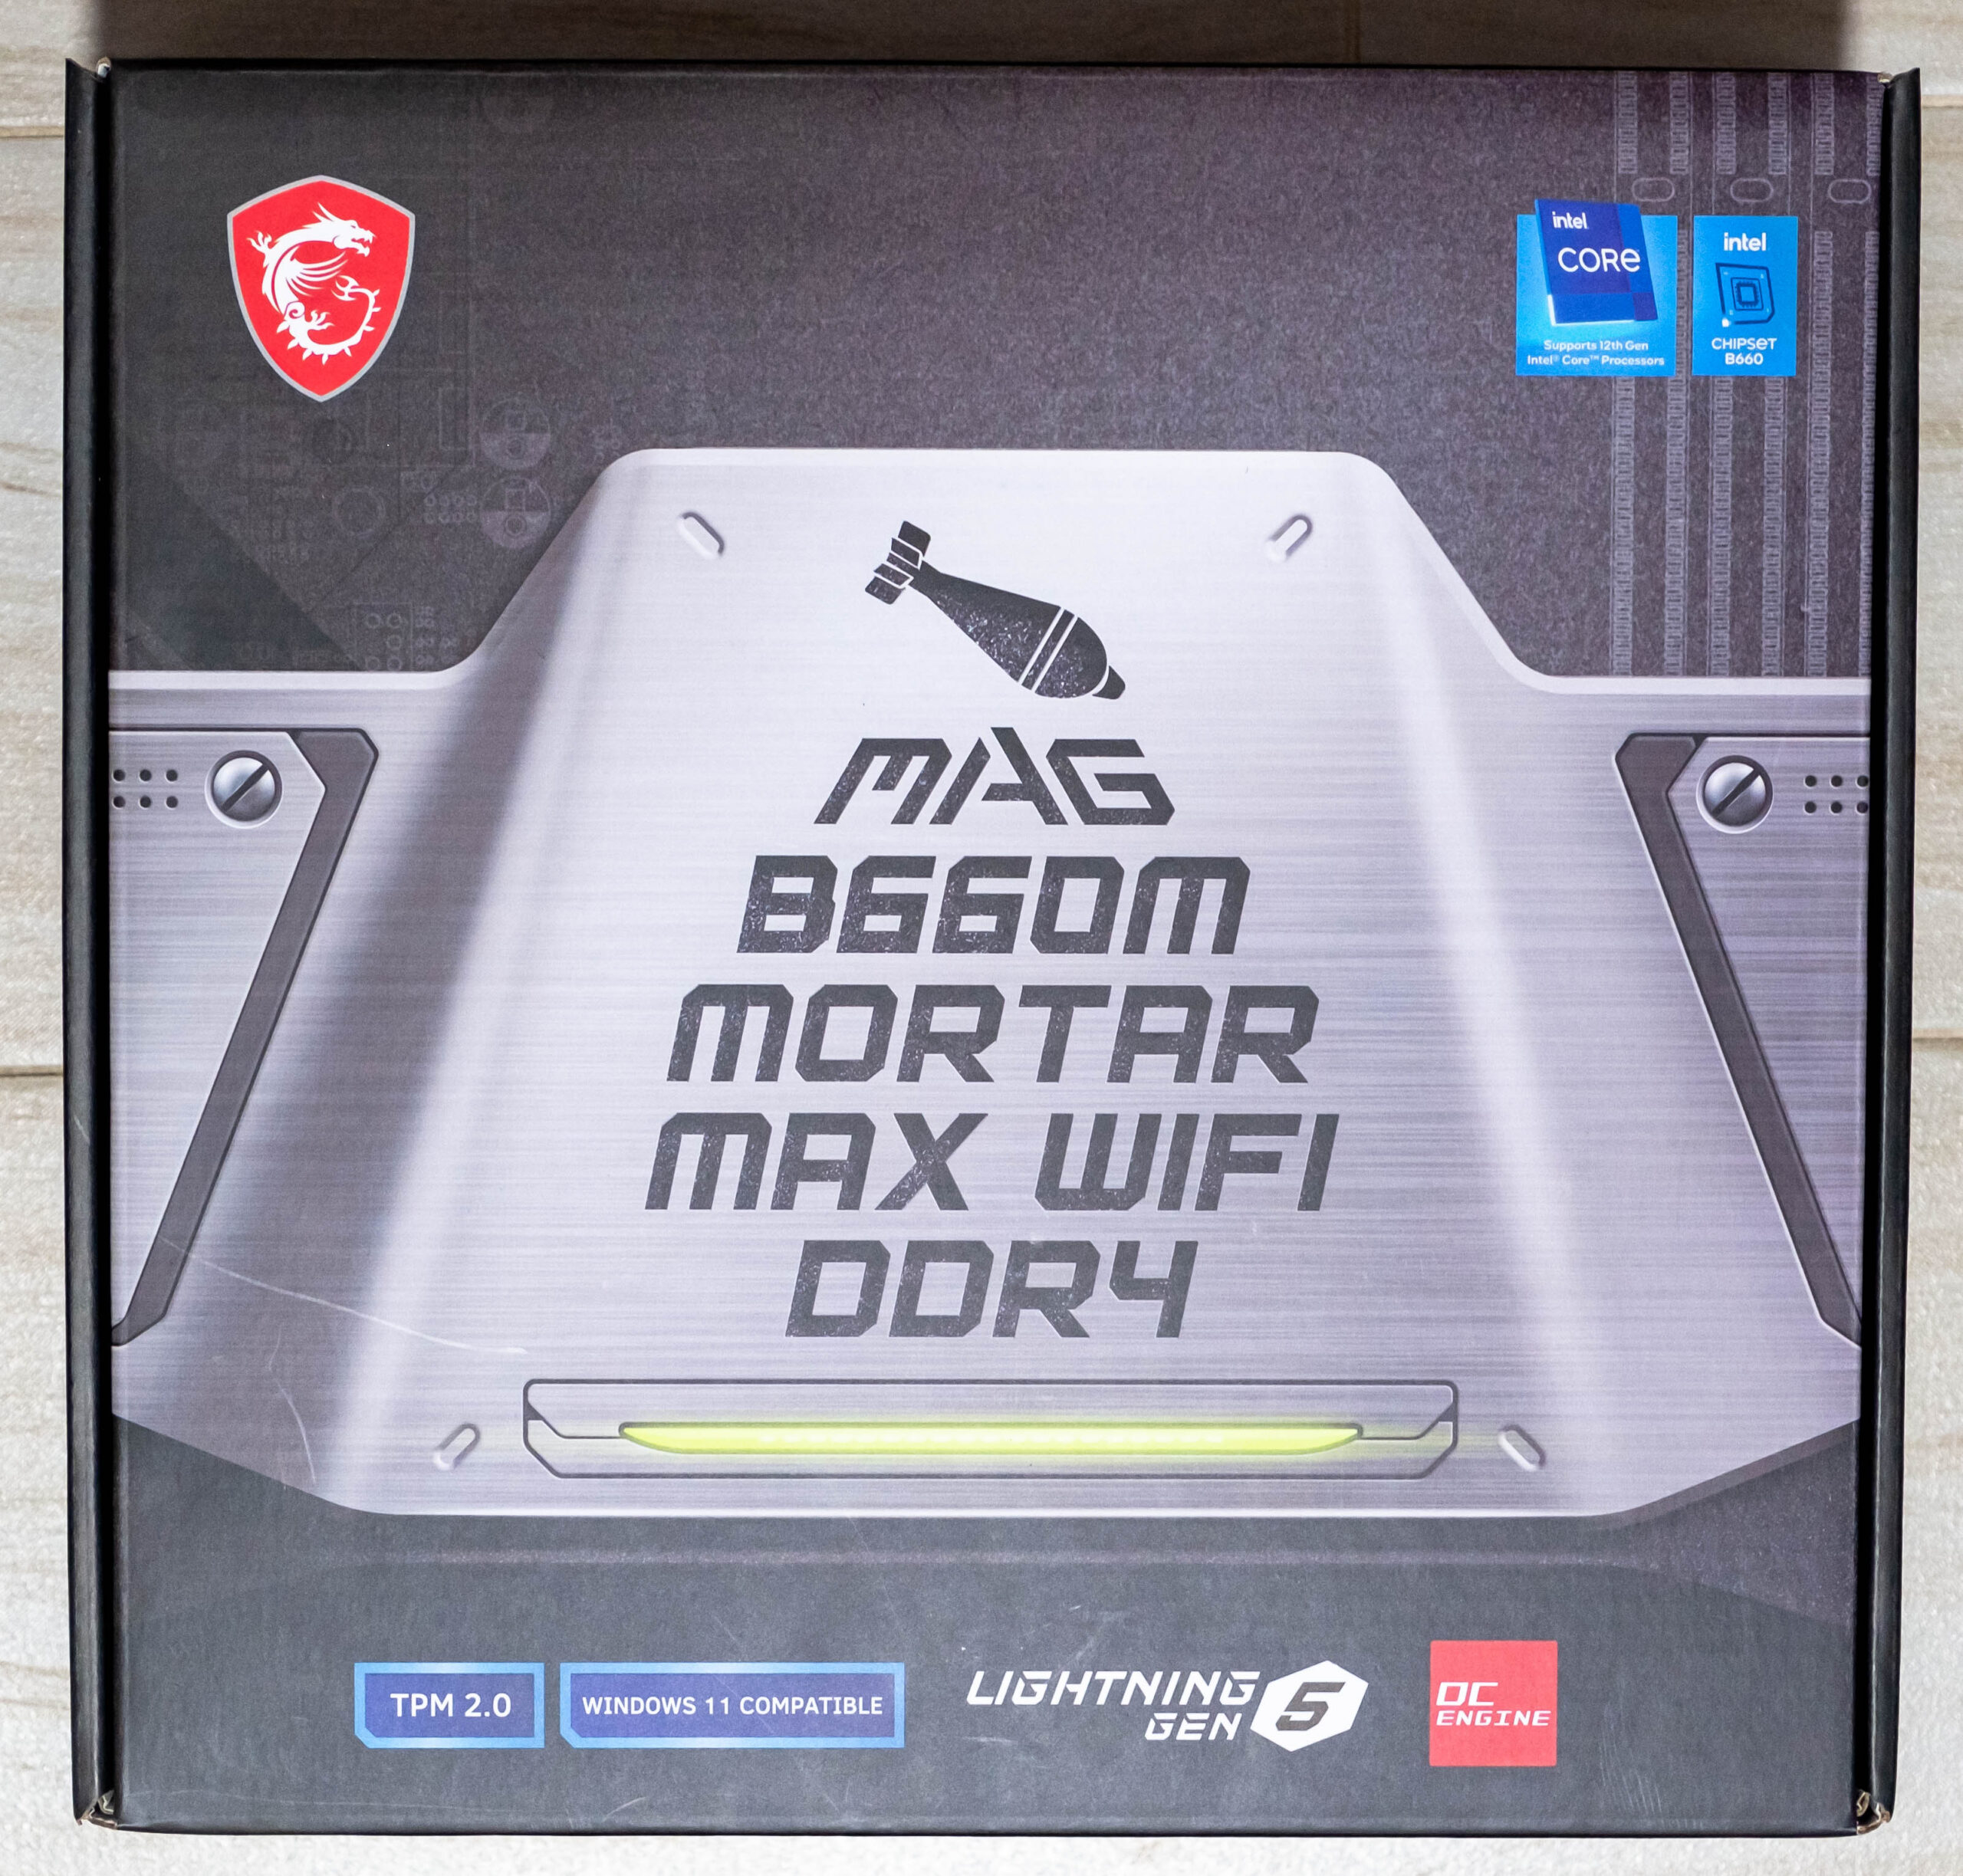 MSI MAG B660M Mortar MAX WiFi DDR4 - Einfoldtech